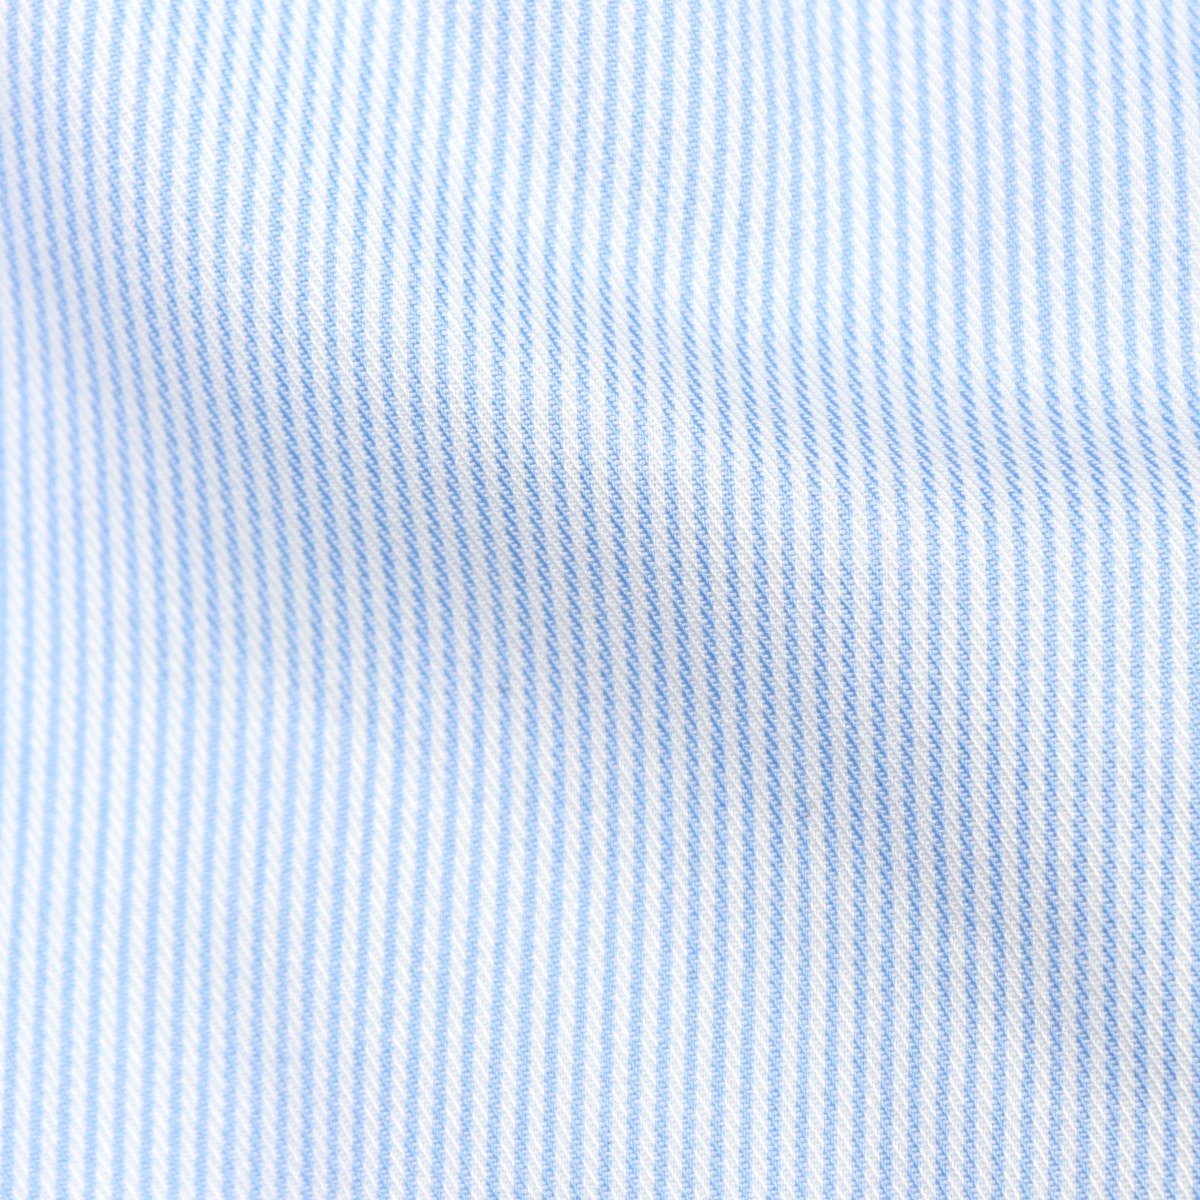 Cordone 1956 light blue slim fit striped twill men's dress shirt